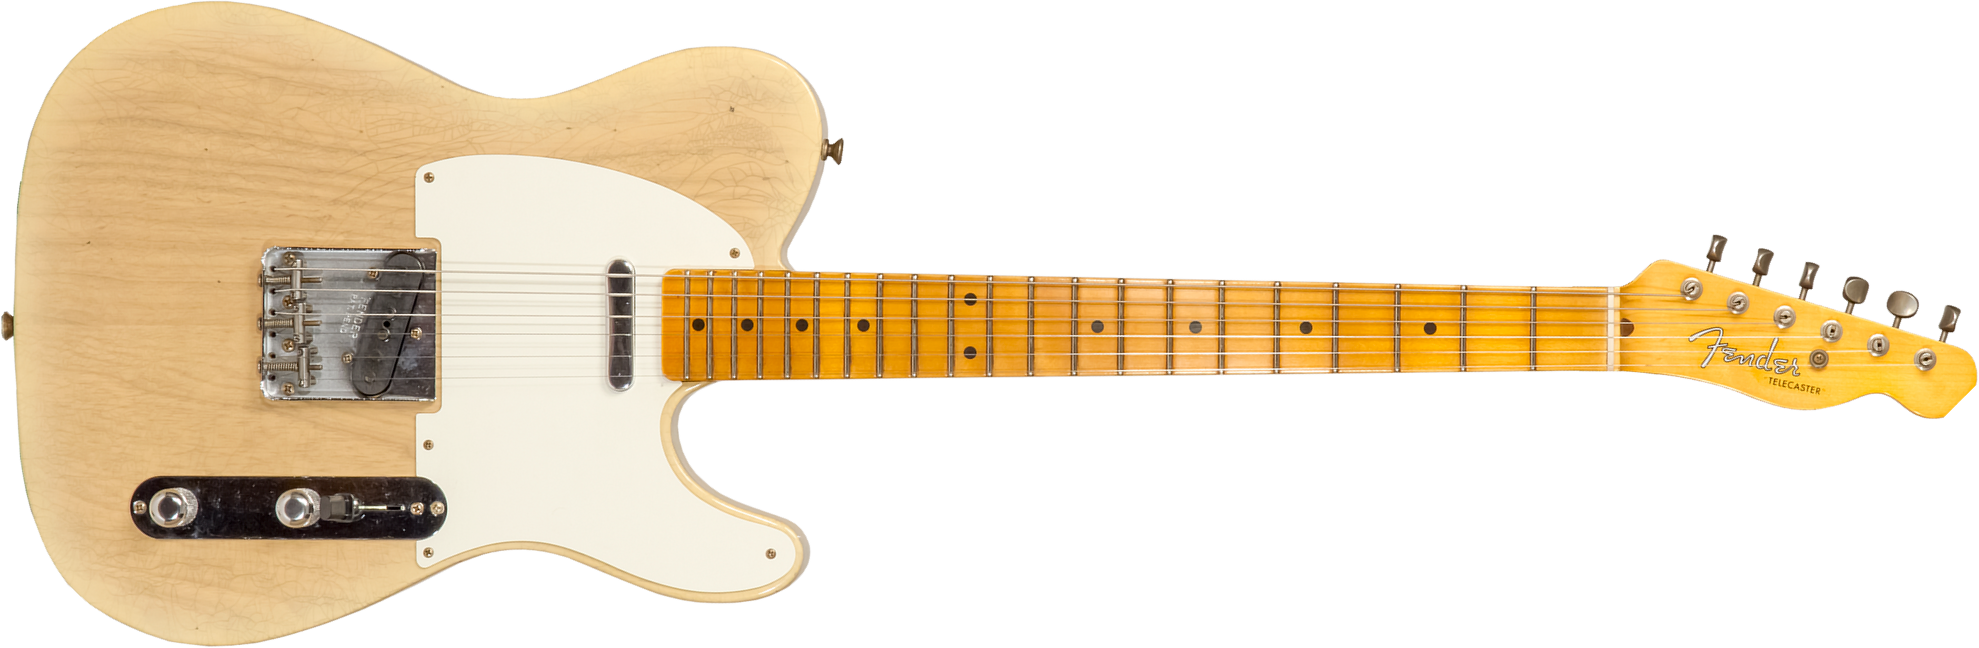 Fender Custom Shop Tele 1955 2s Ht Mn #cz570232 - Journeyman Relic Natural Blonde - Guitare Électrique Forme Tel - Main picture